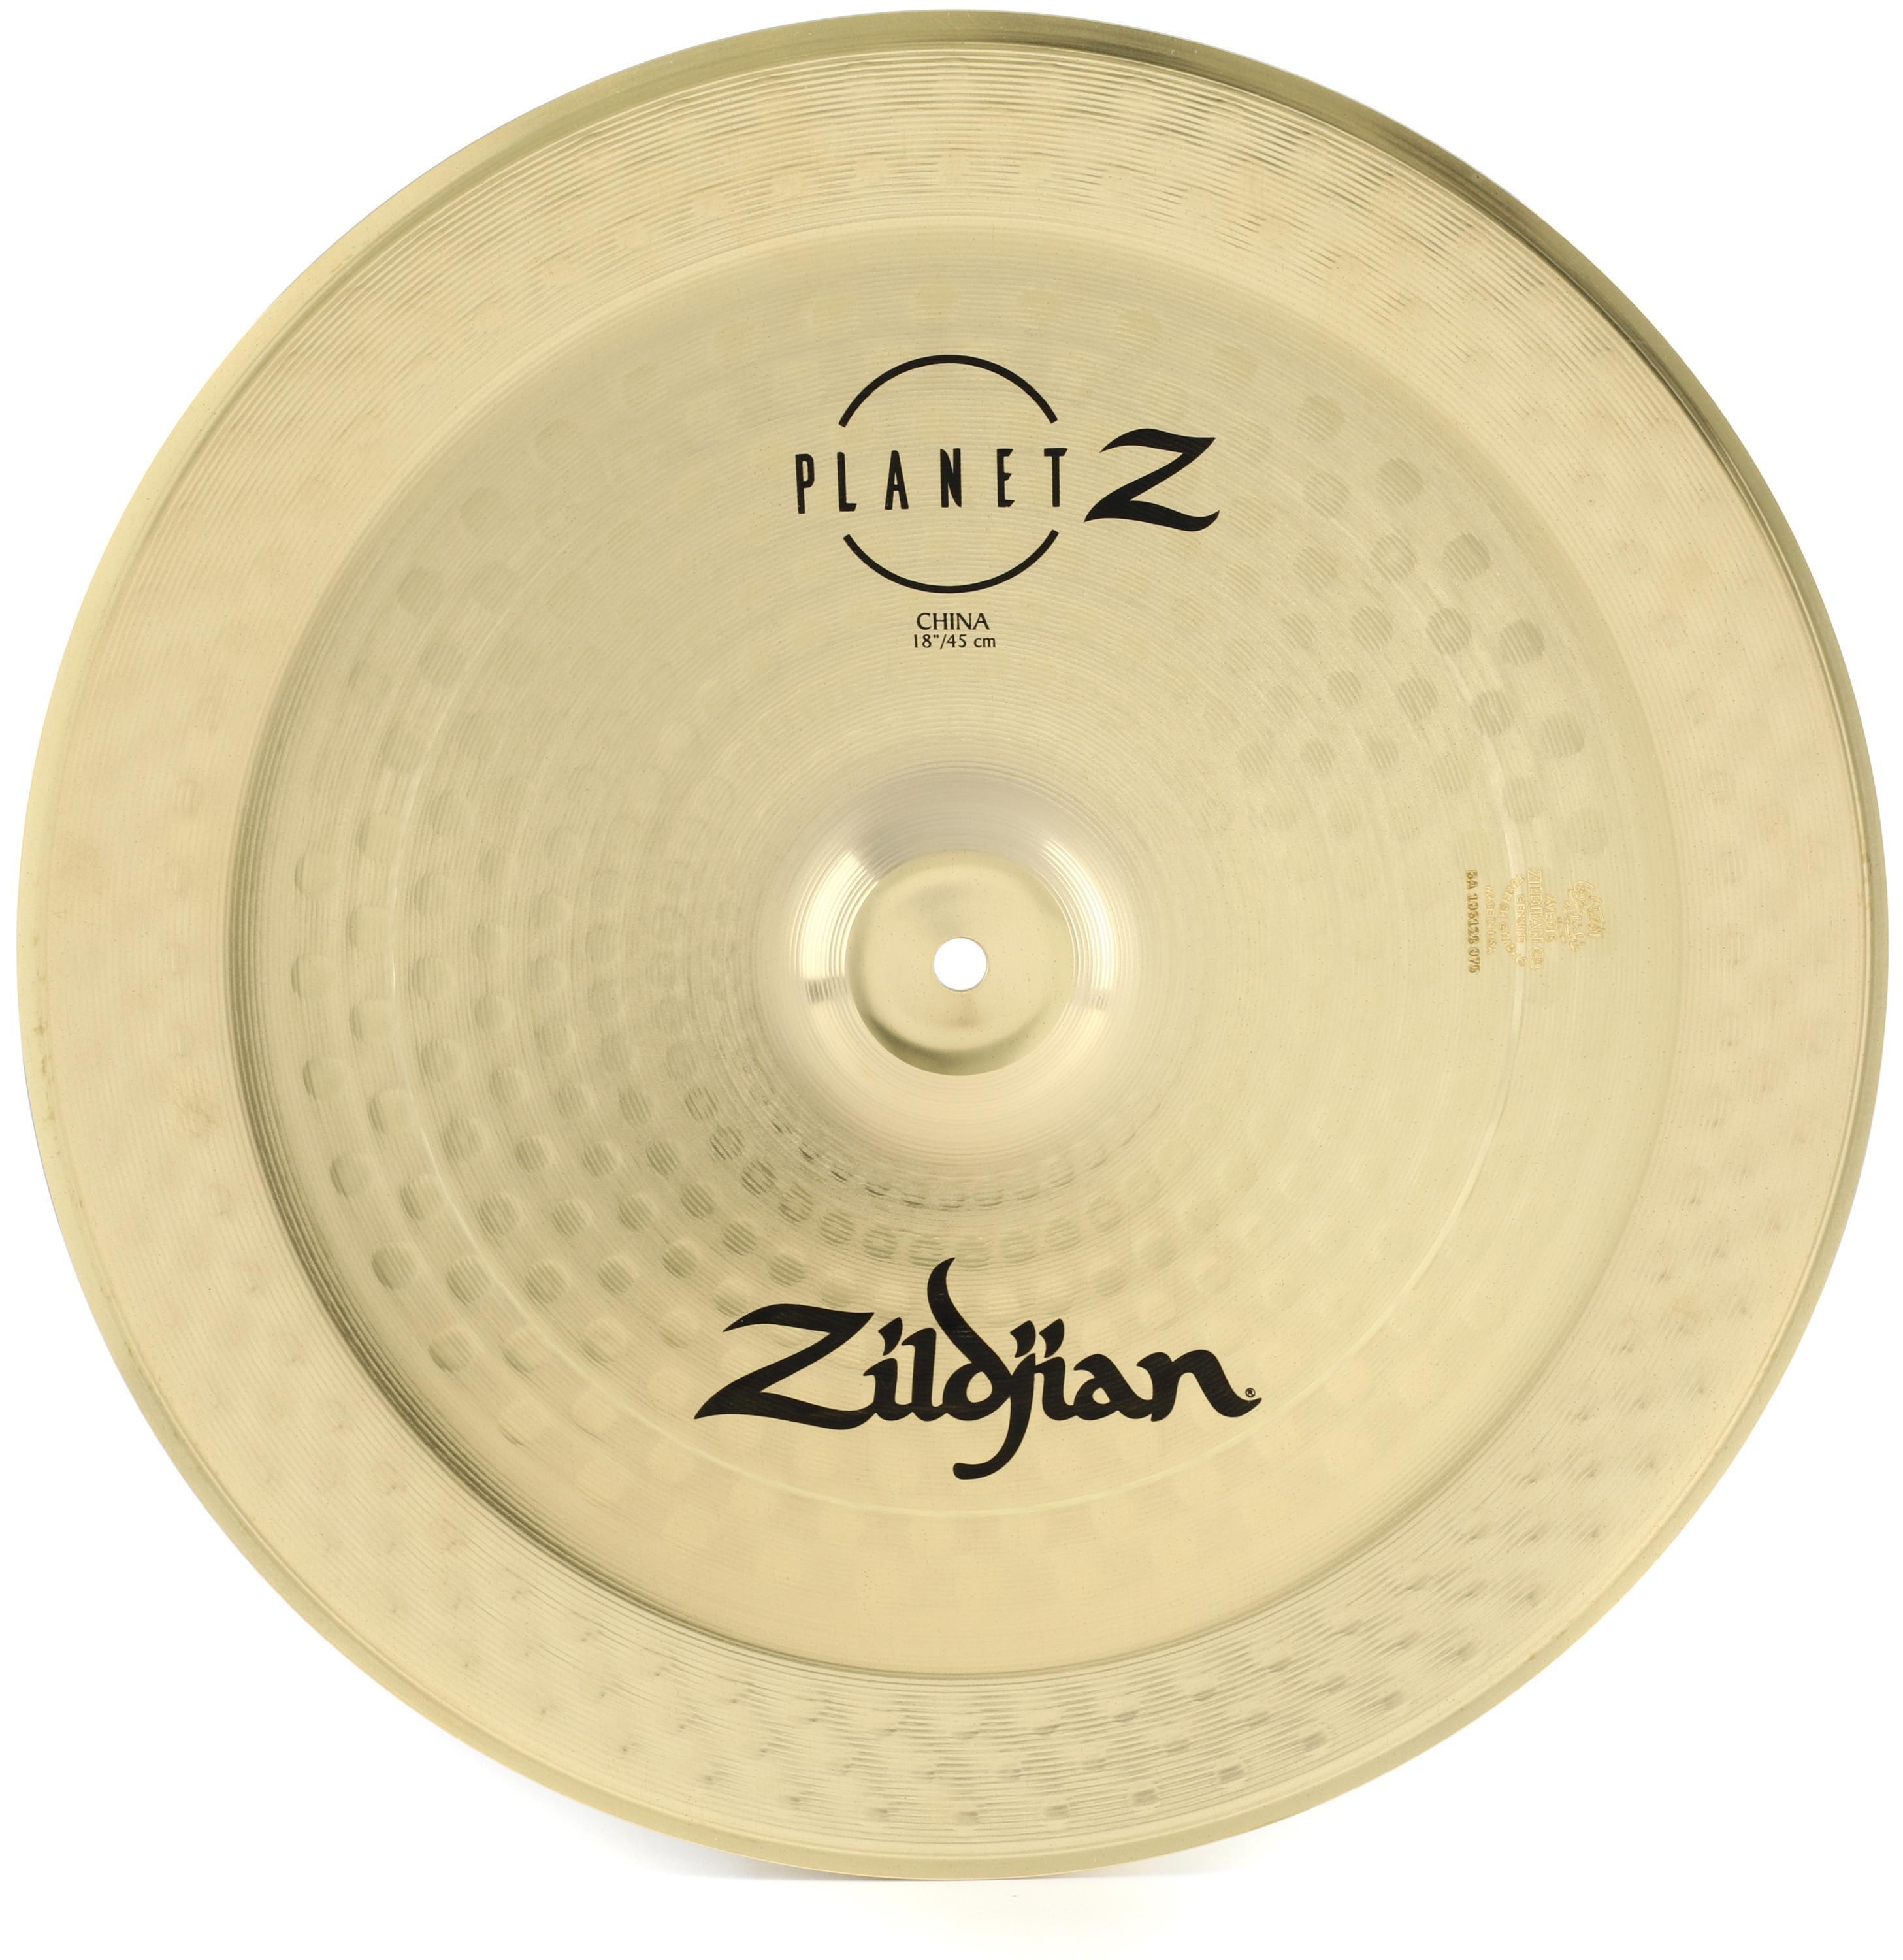 Zildjian 18 inch Planet Z China Cymbal | Sweetwater